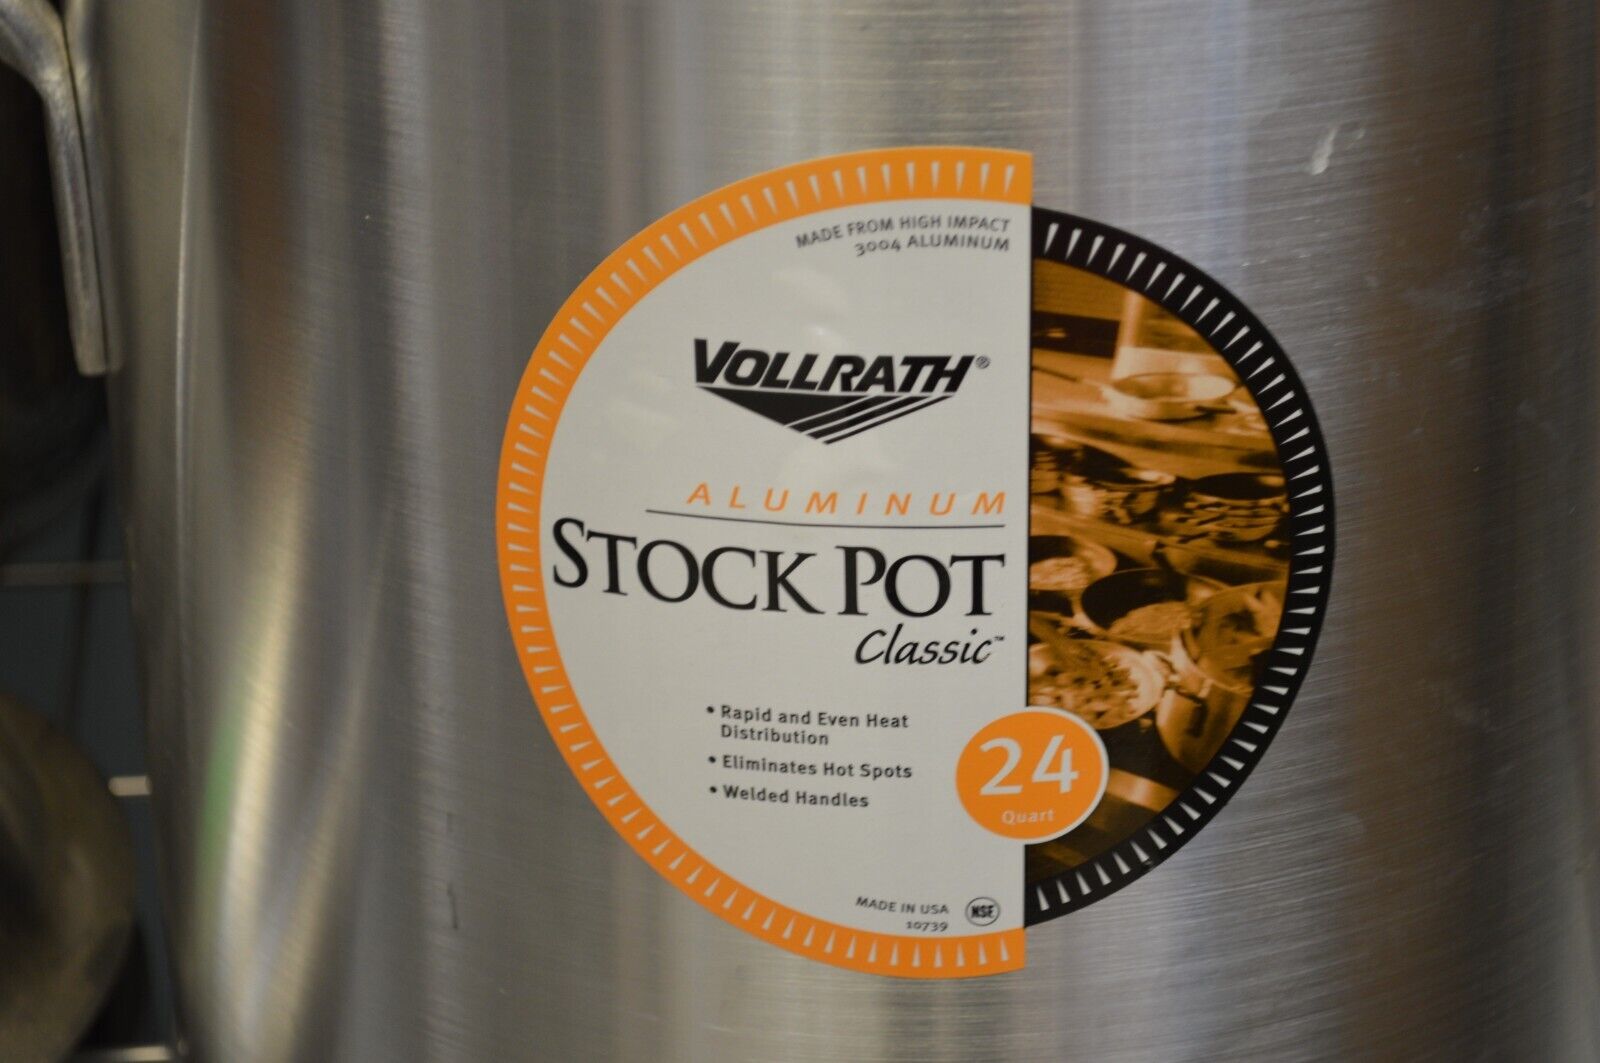 Vollrath Aluminum Stock Pot Classic 24qt, model 10739